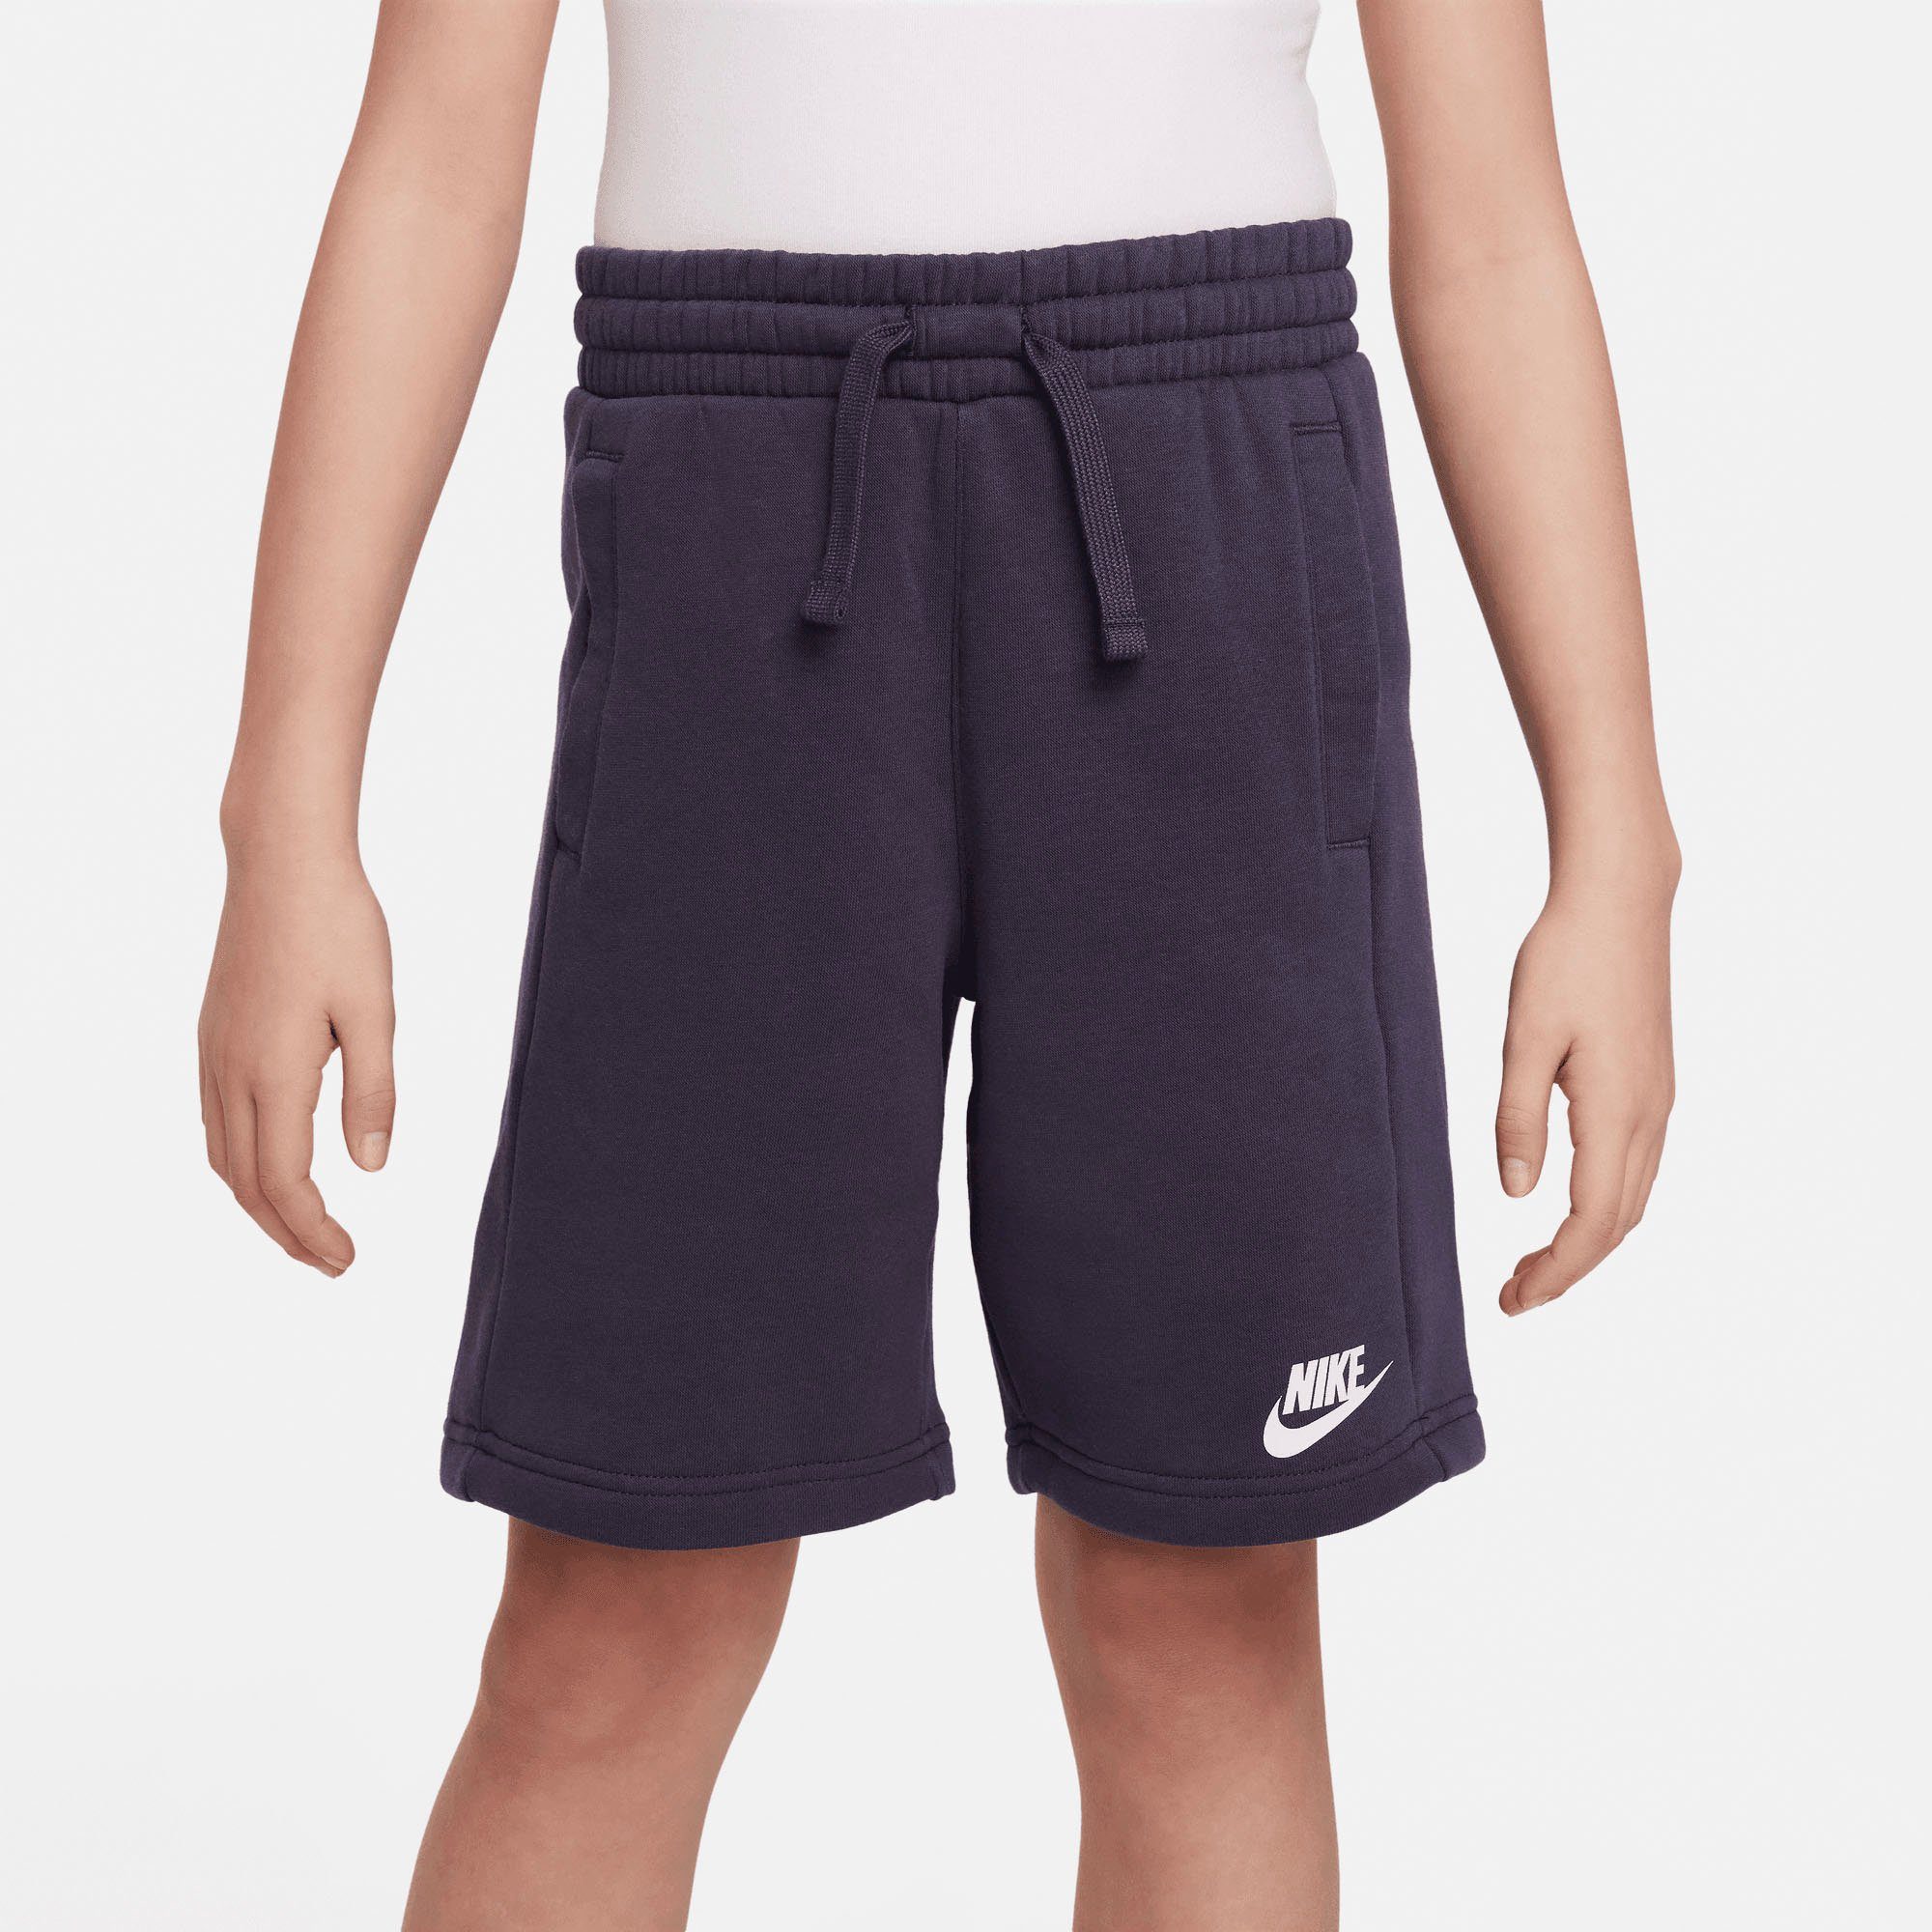 Terry Kids' French Sportswear Big Tracksuit blau Nike Trainingsanzug